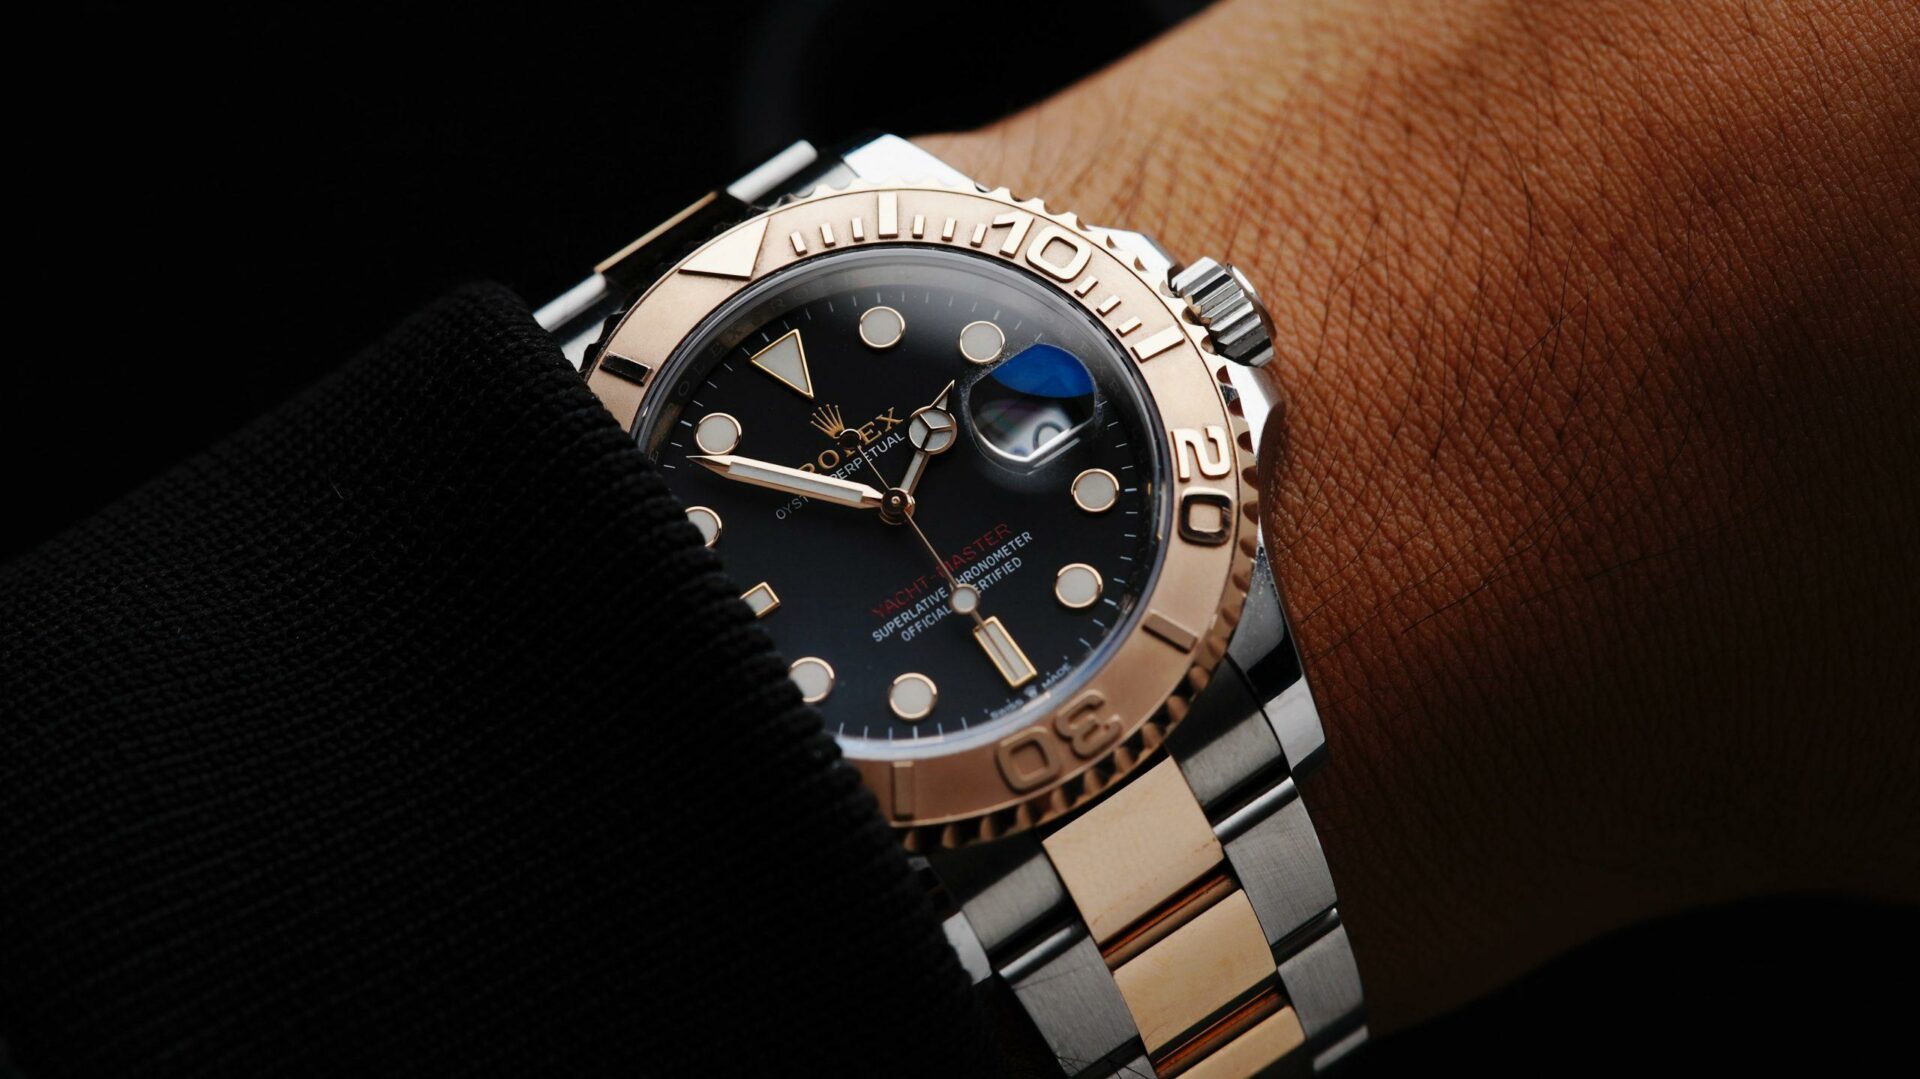 Rolex Yacht-Master 40mm watch wrist shot.